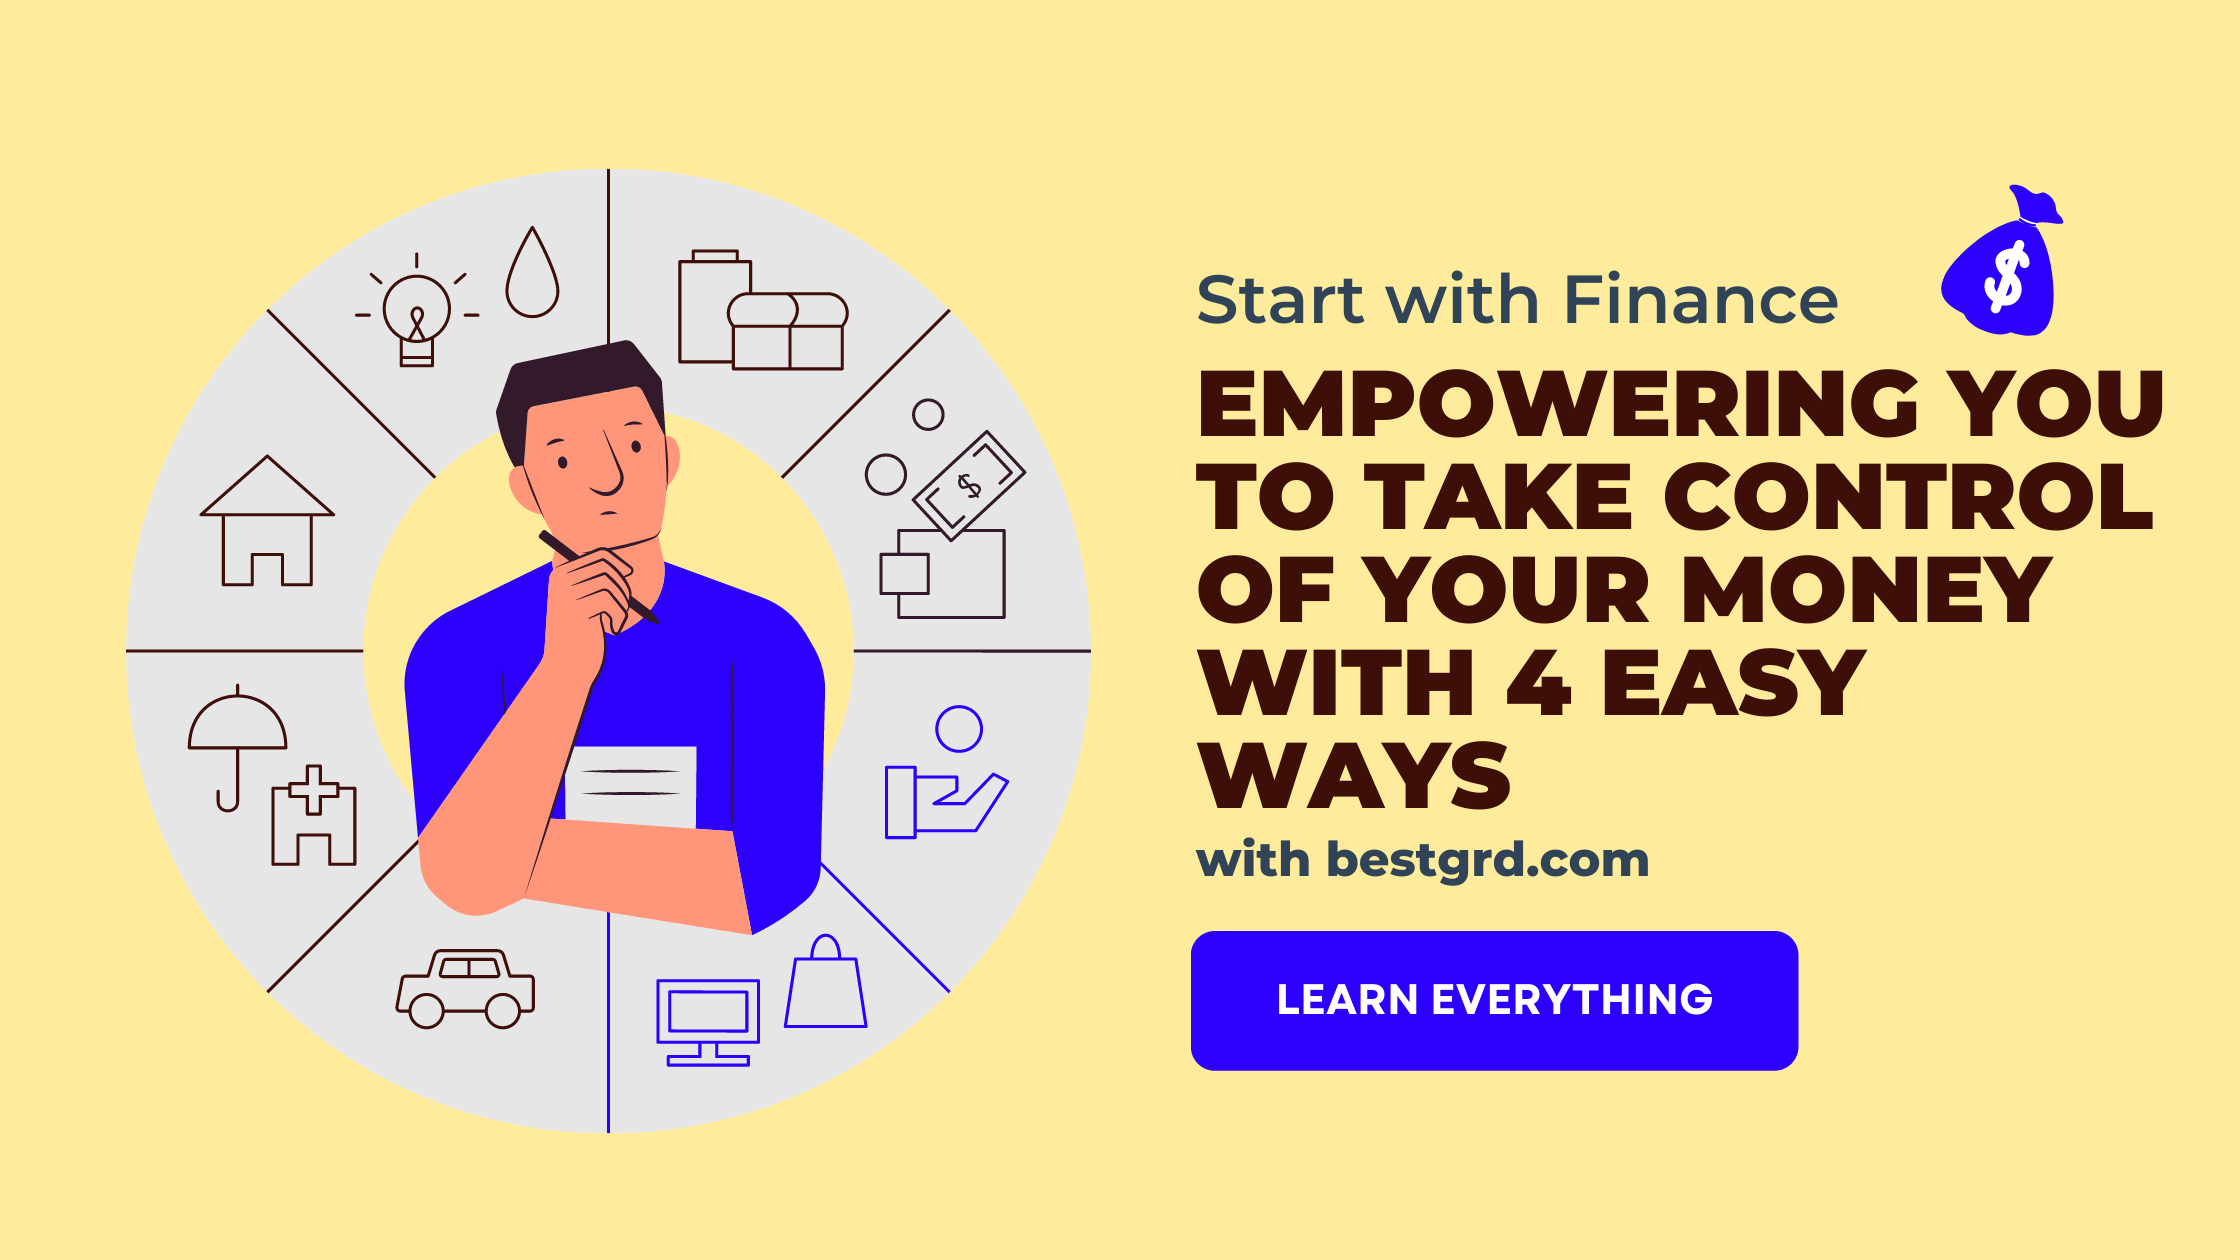 Start with Finance - bestgrd.com